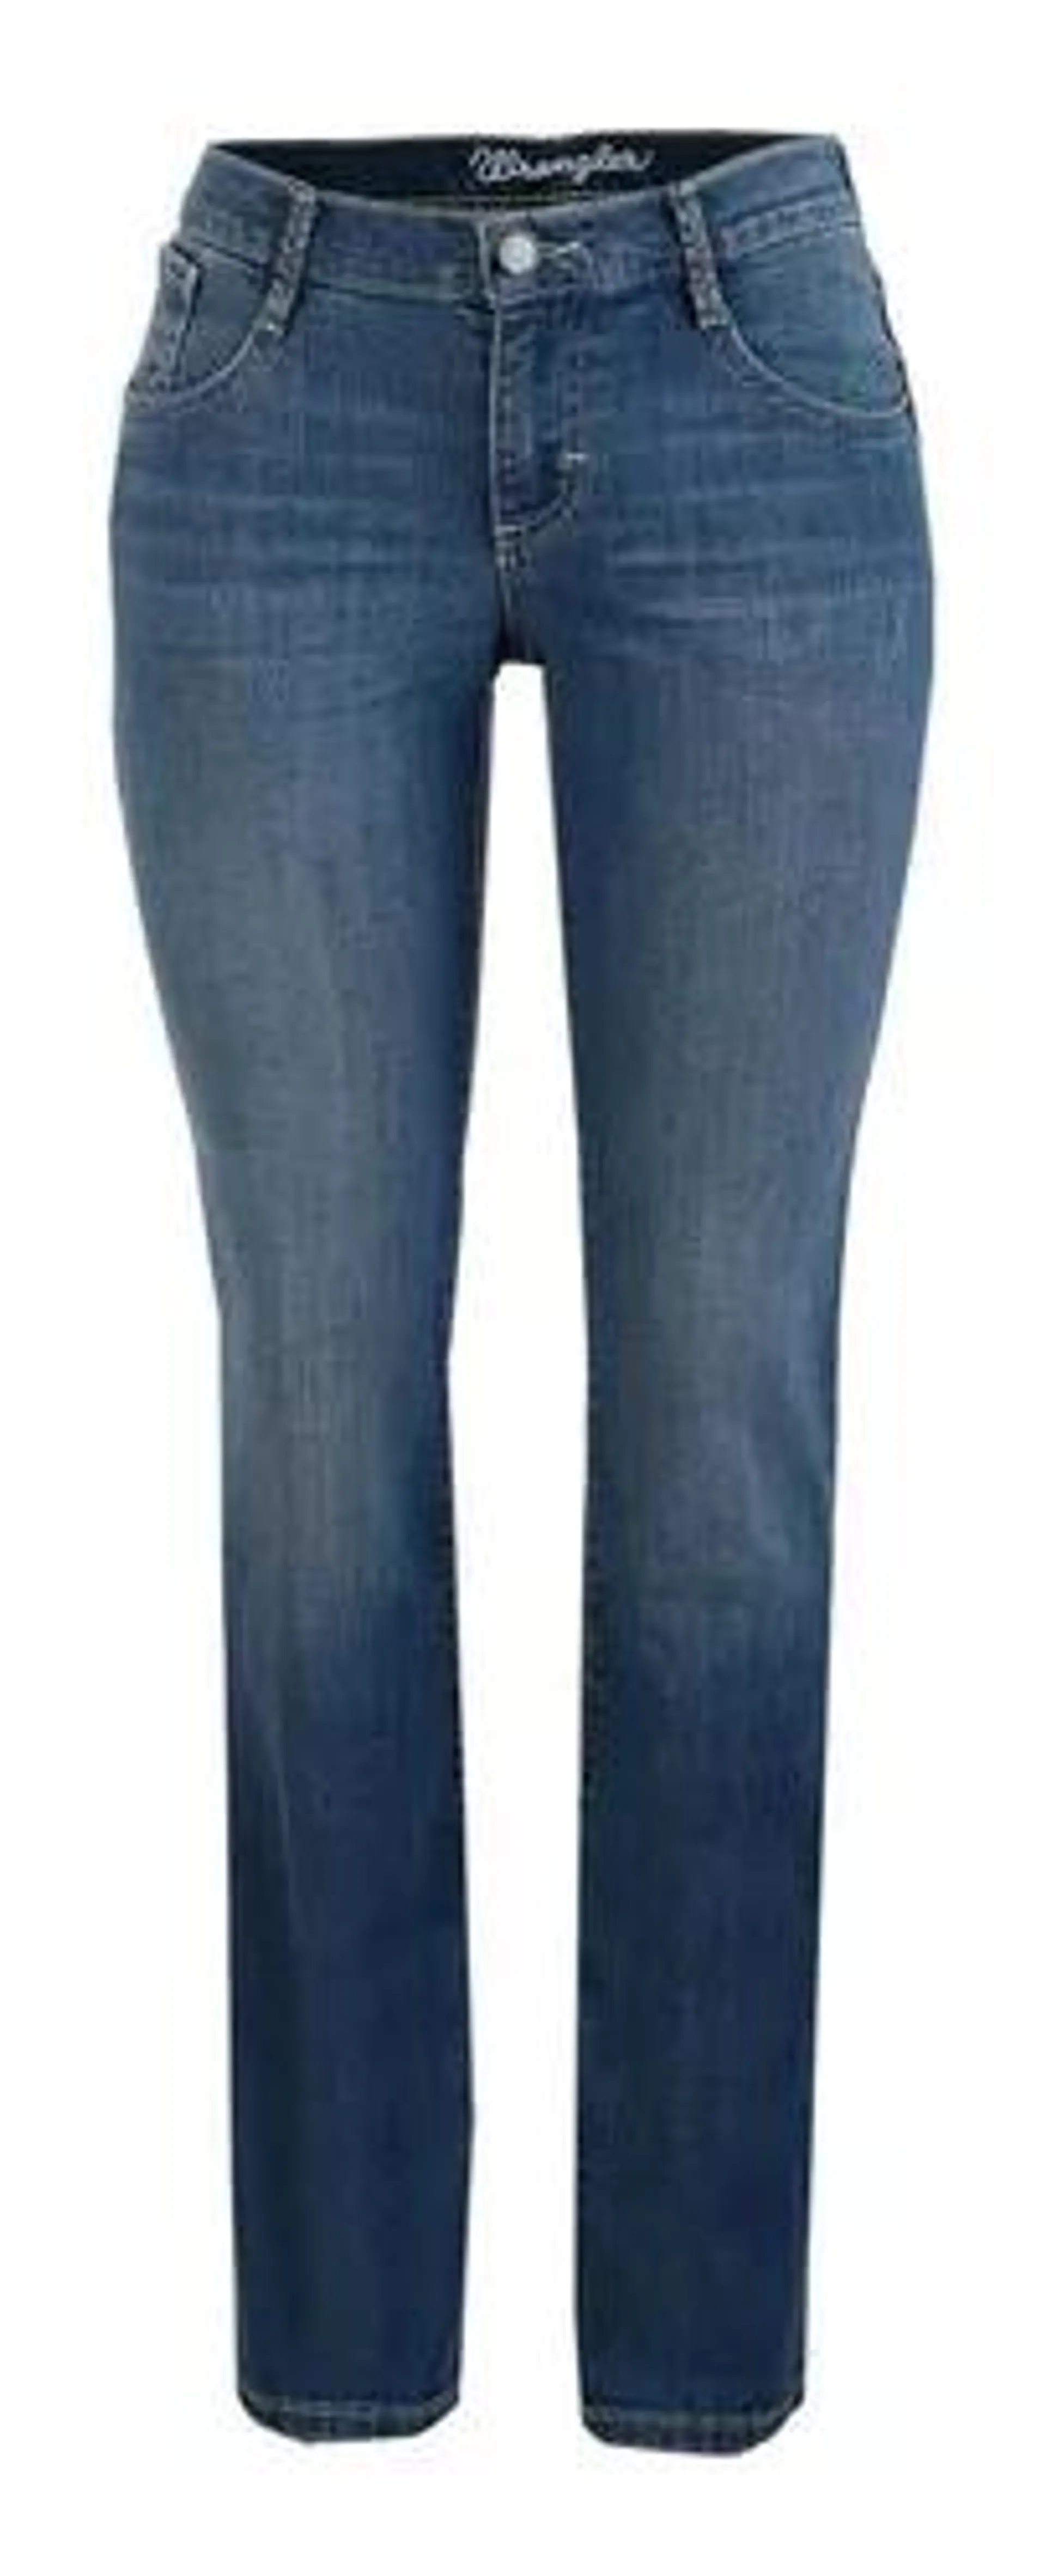 Jeans Vaquero Wrangler Low Rise De Mujer Y15